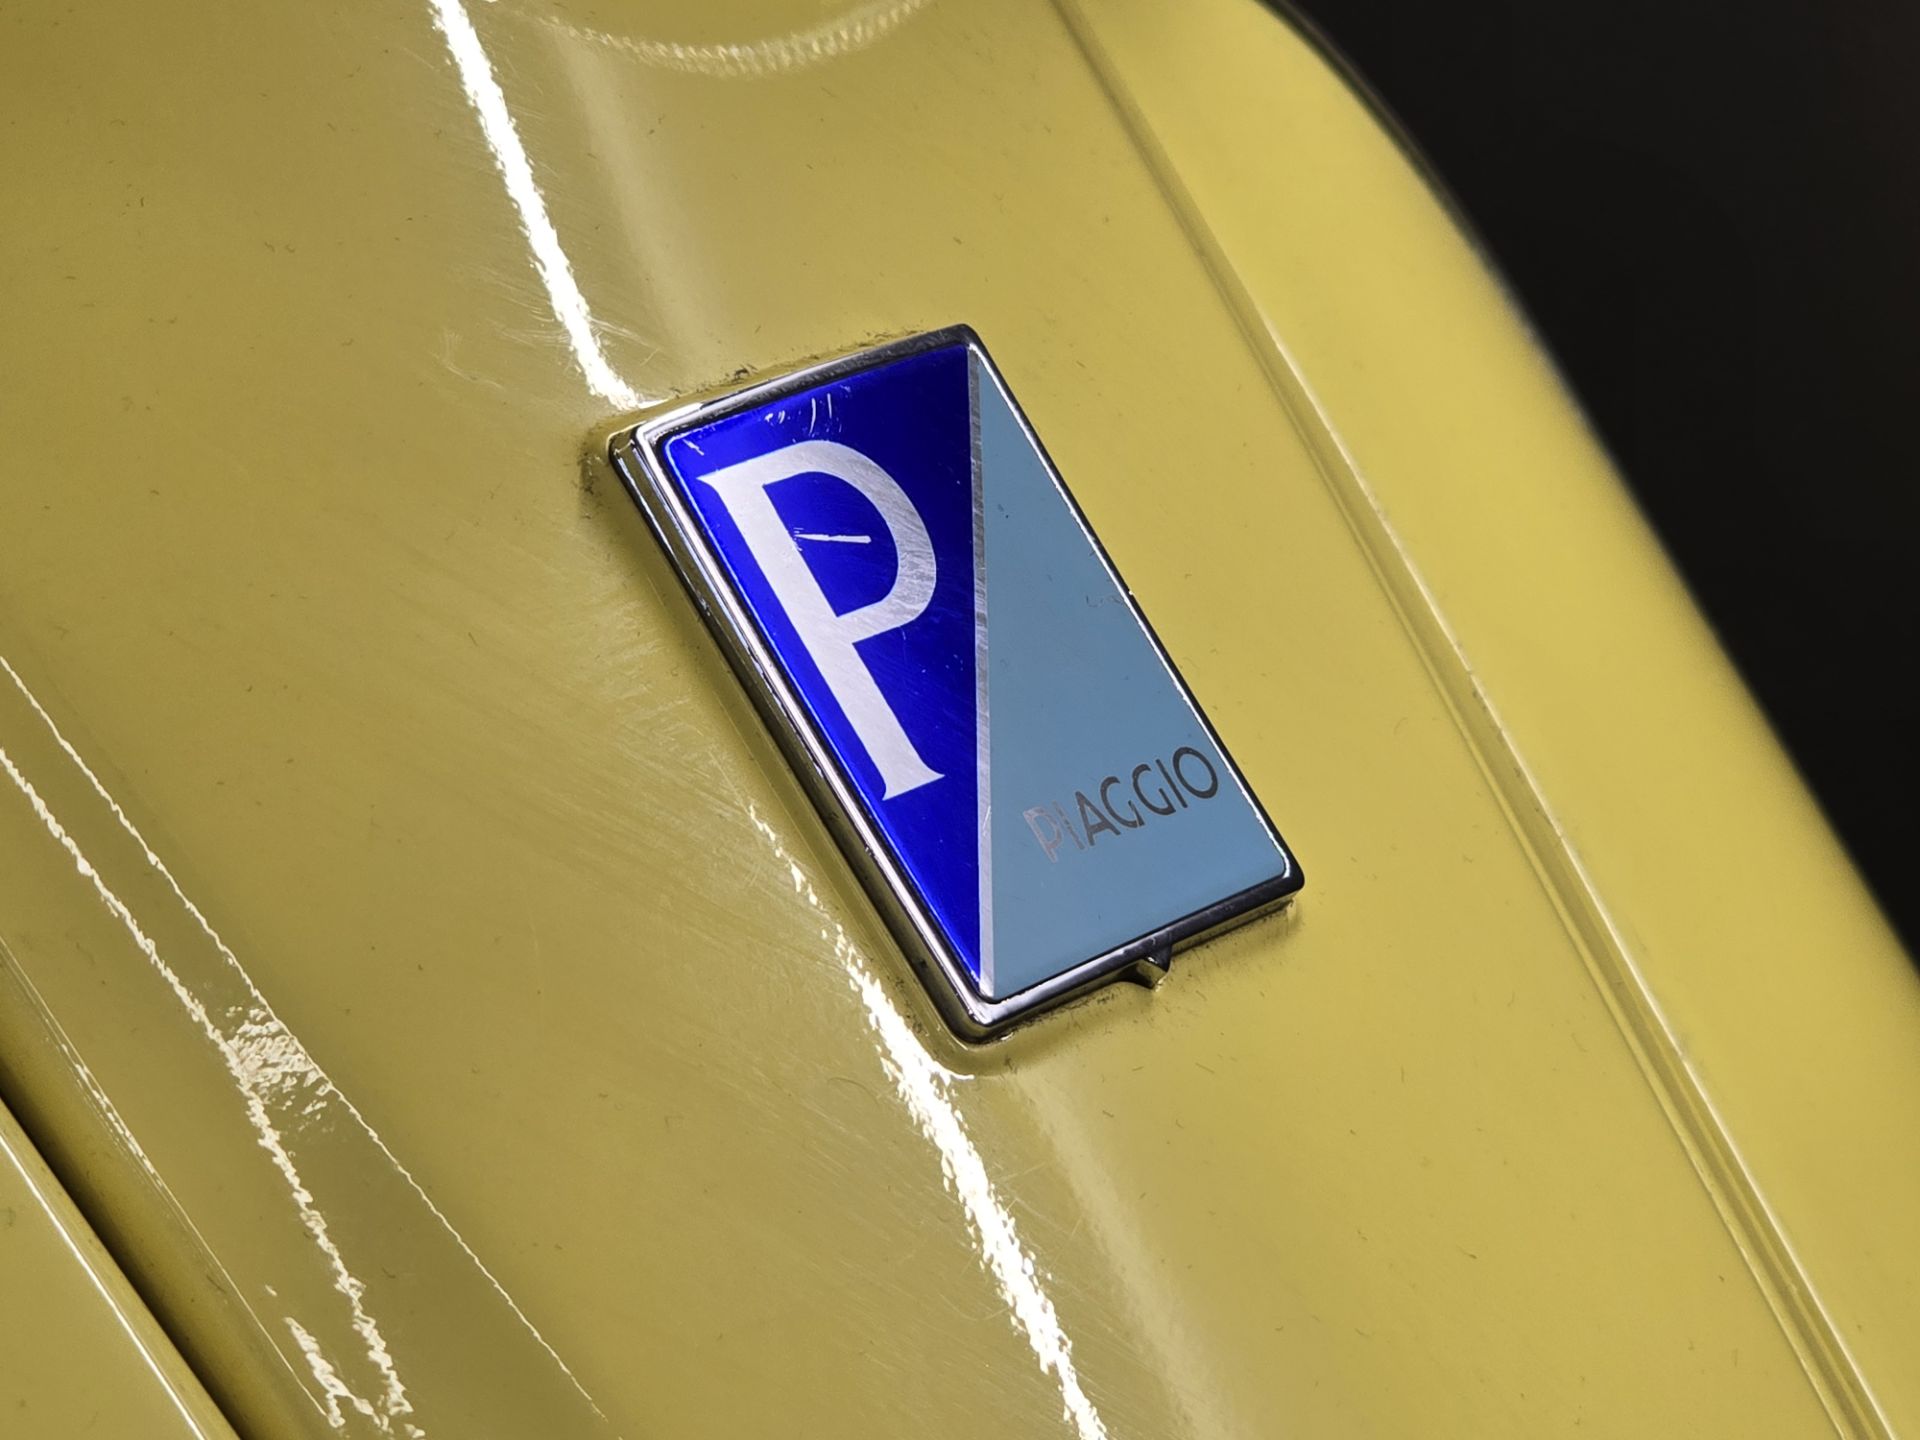 نمای نزدیک از لوگوی موتور Piaggio